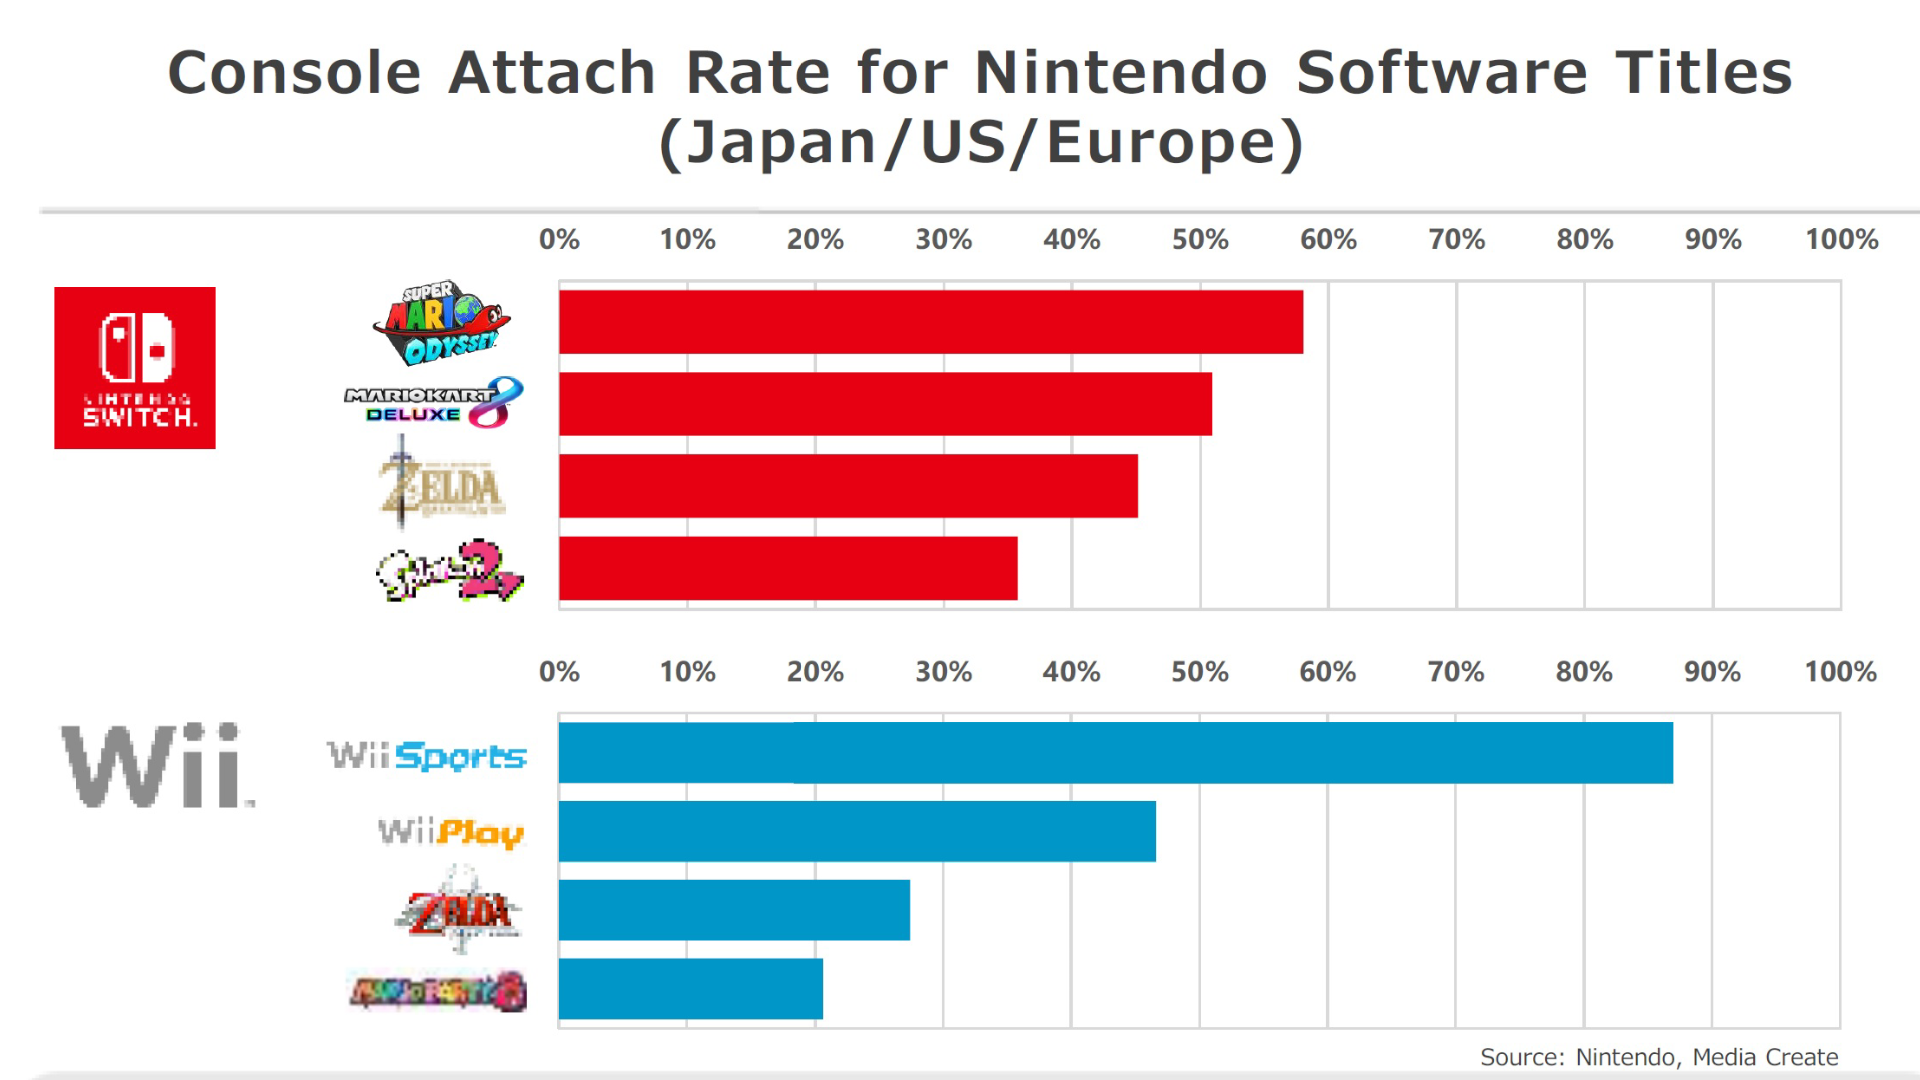 Kimishima habla sobre la tasa de conexión entre los juegos de Switch y la consola y las ventas a largo plazo